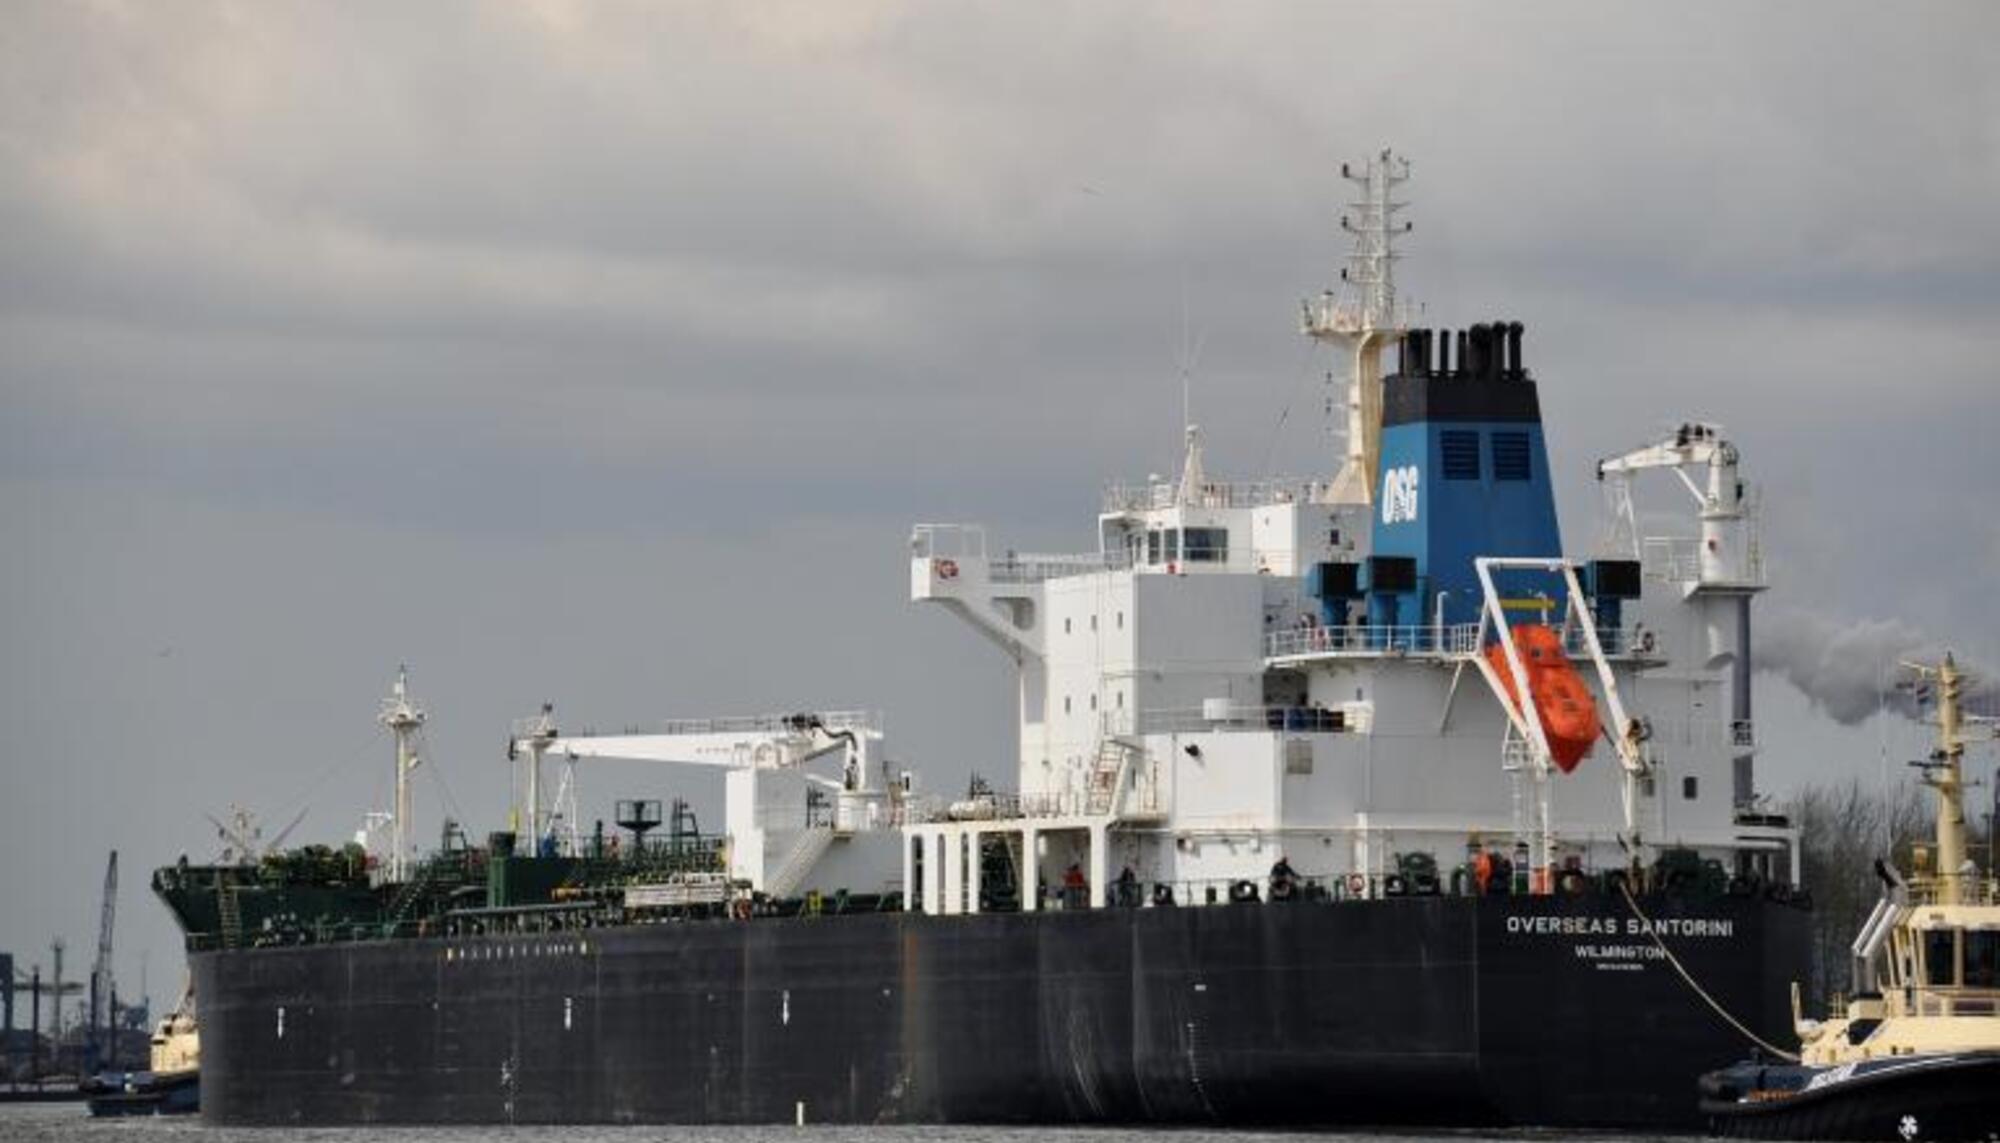 El buque Overseas Santorini transporta combustible a Israel, que será utilizado en la campaña de genocidio contra el pueblo de Gaza, según la campaña Boicot, Desinversiones y Sanciones a Israel.